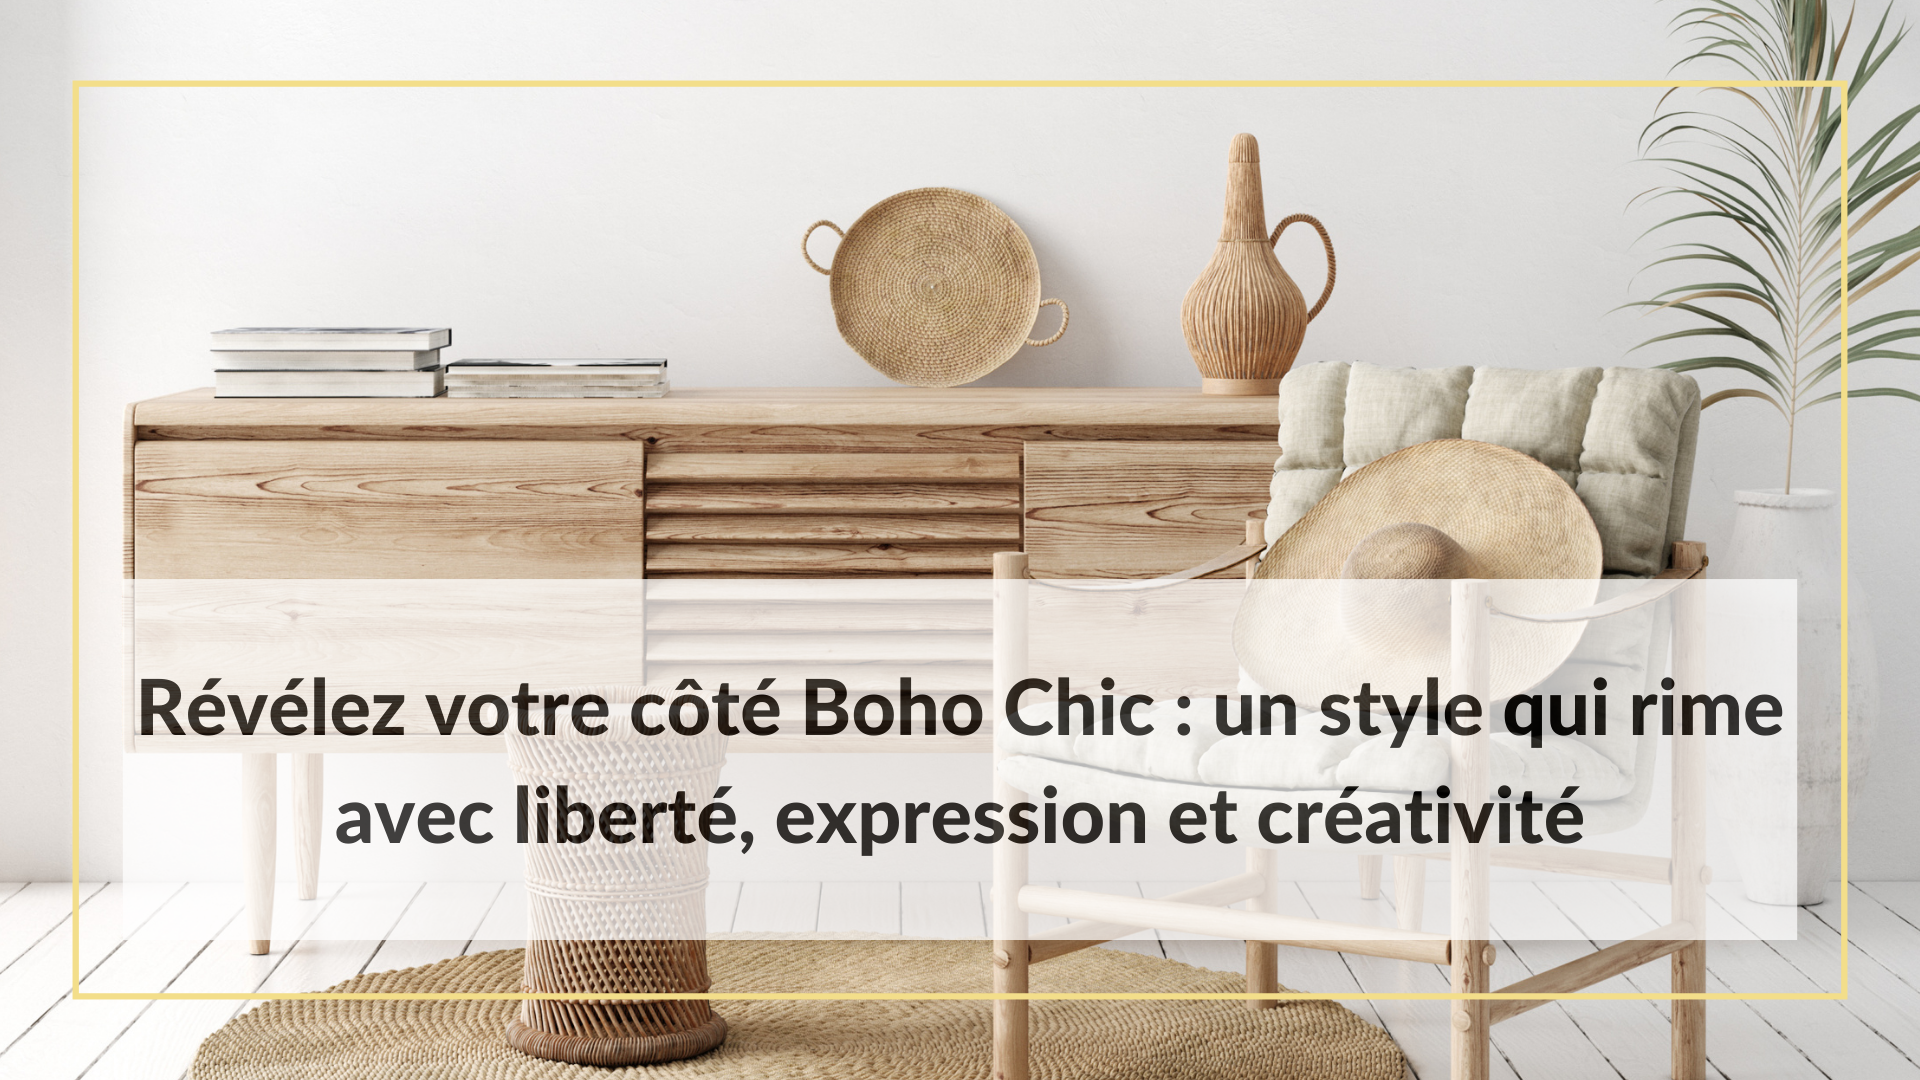 Révélez votre côté Boho Chic un style qui rime avec liberté, expression et créativité